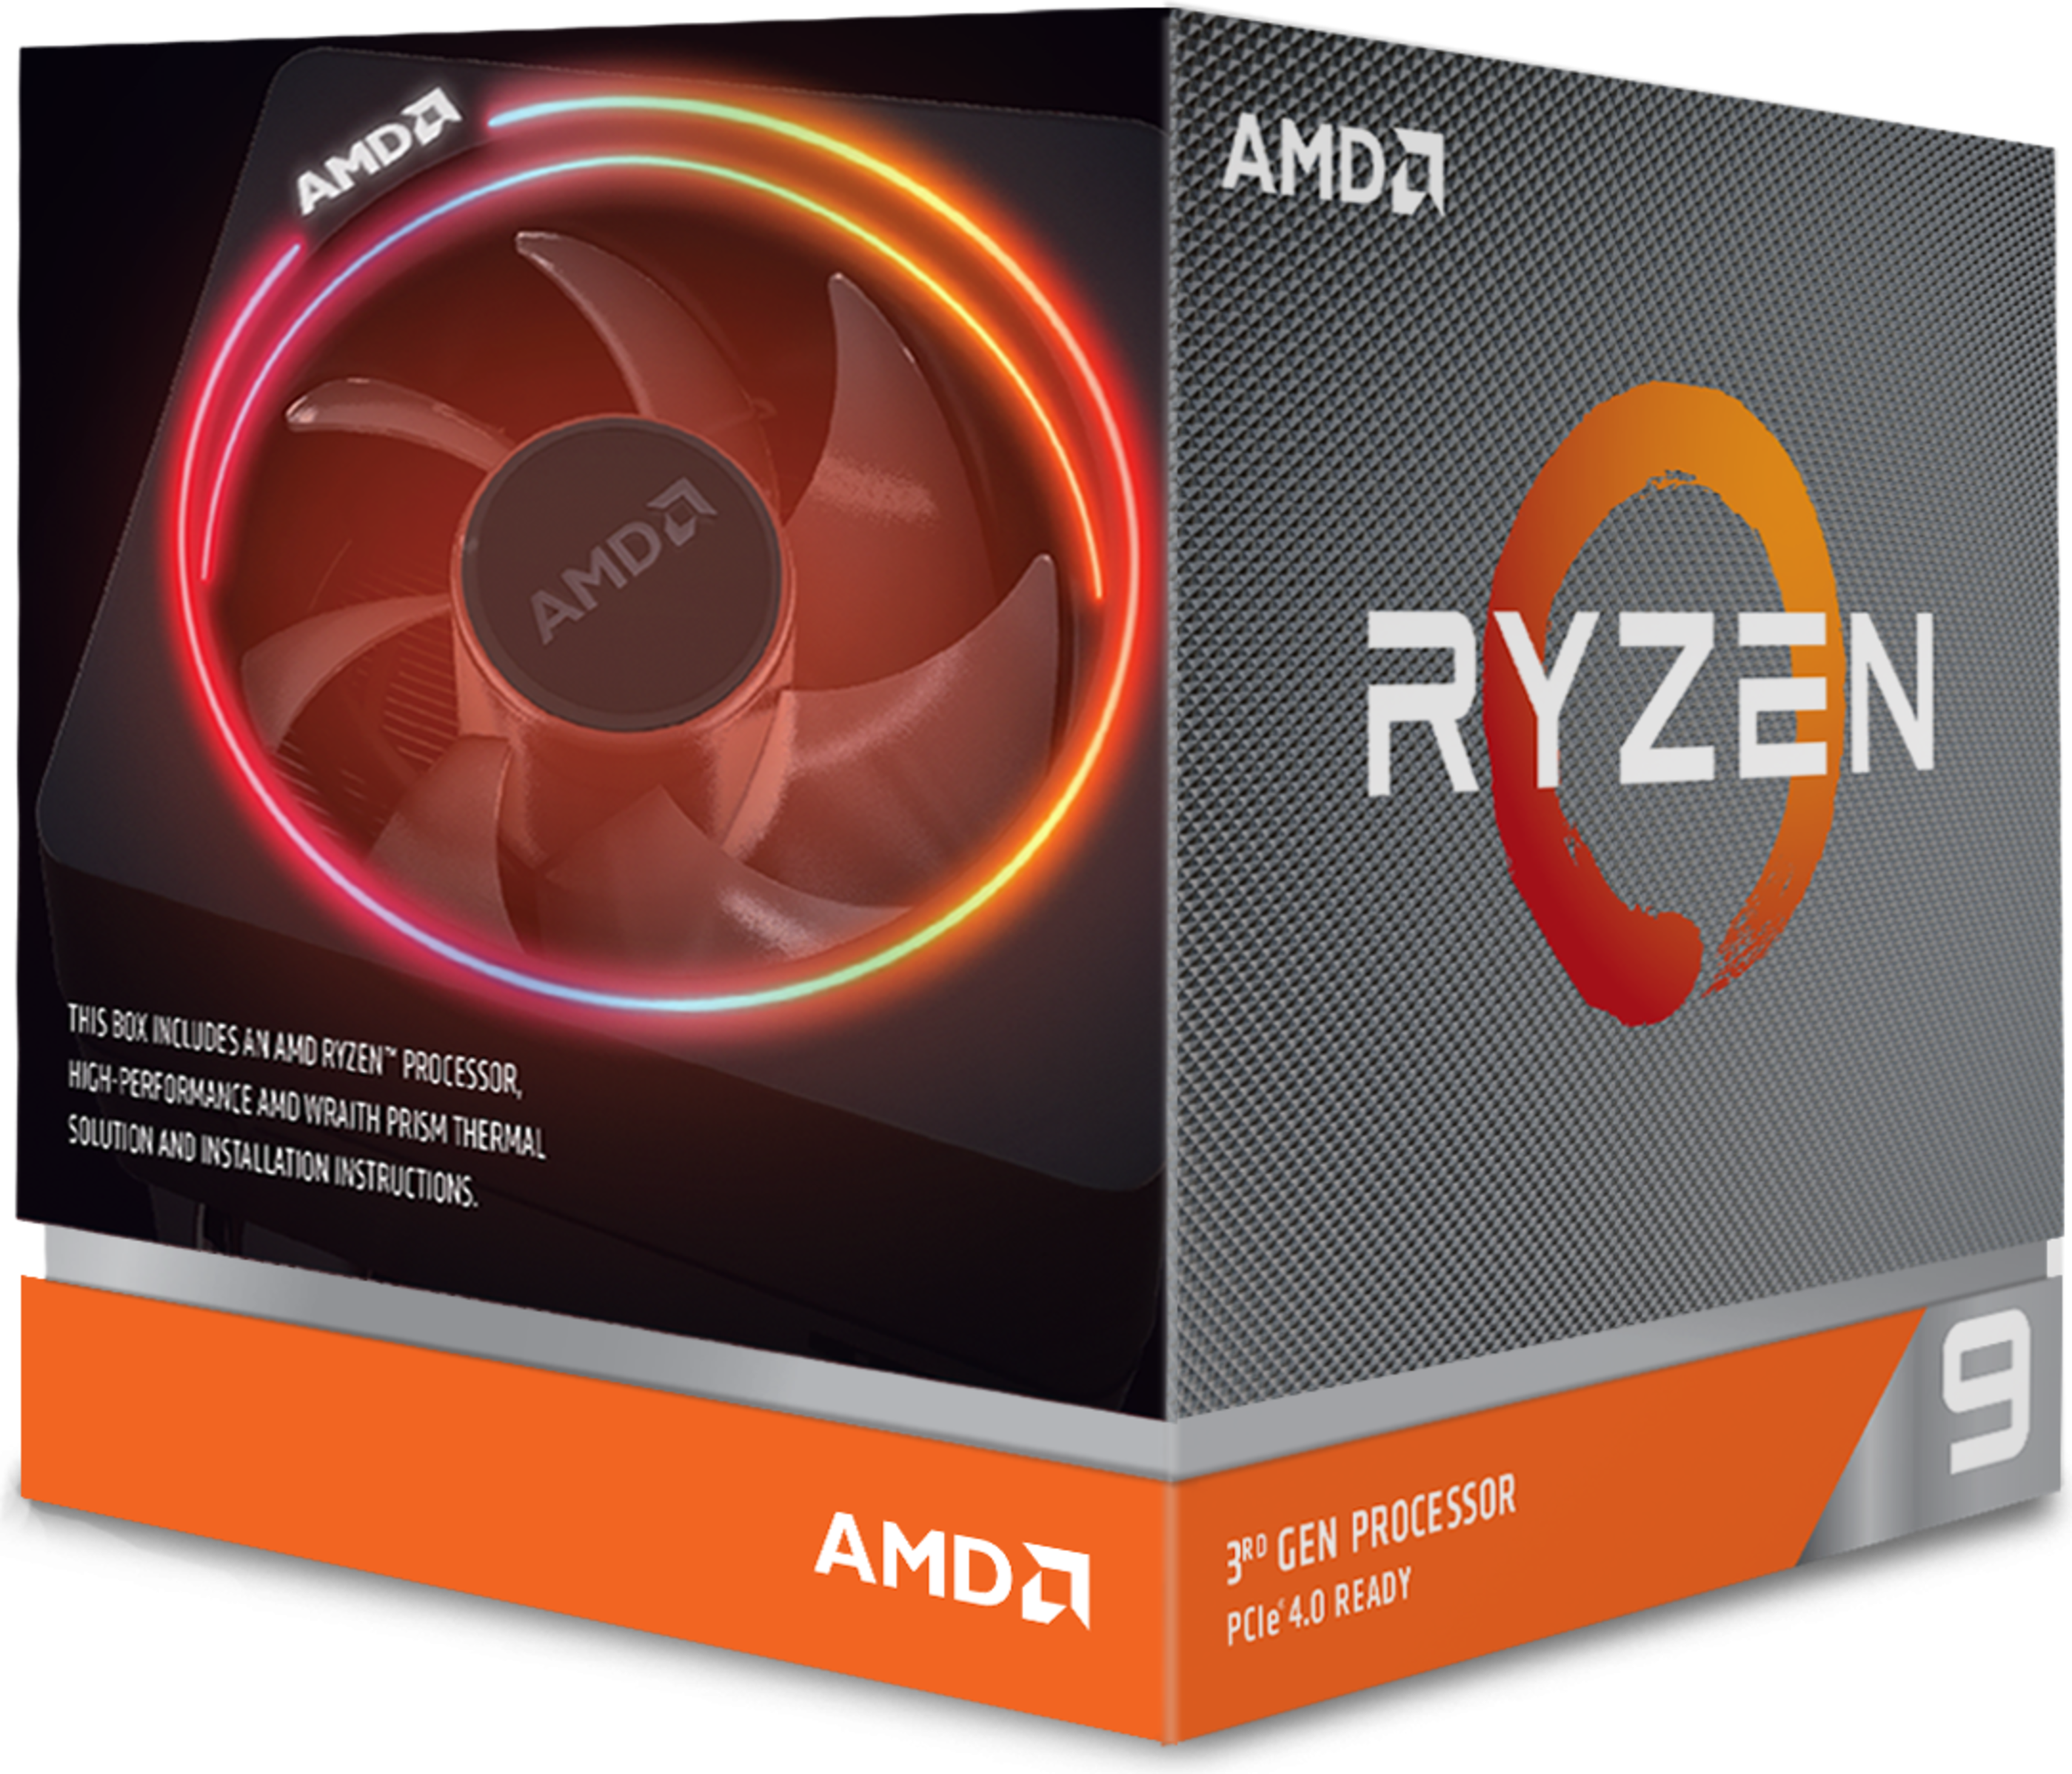 Immagine pubblicata in relazione al seguente contenuto: La data di lancio del processore AMD Ryzen 9 3950X svelata da uno store on line? | Nome immagine: news29980_amd-ryzen-9-3950x-retail-box_1.png